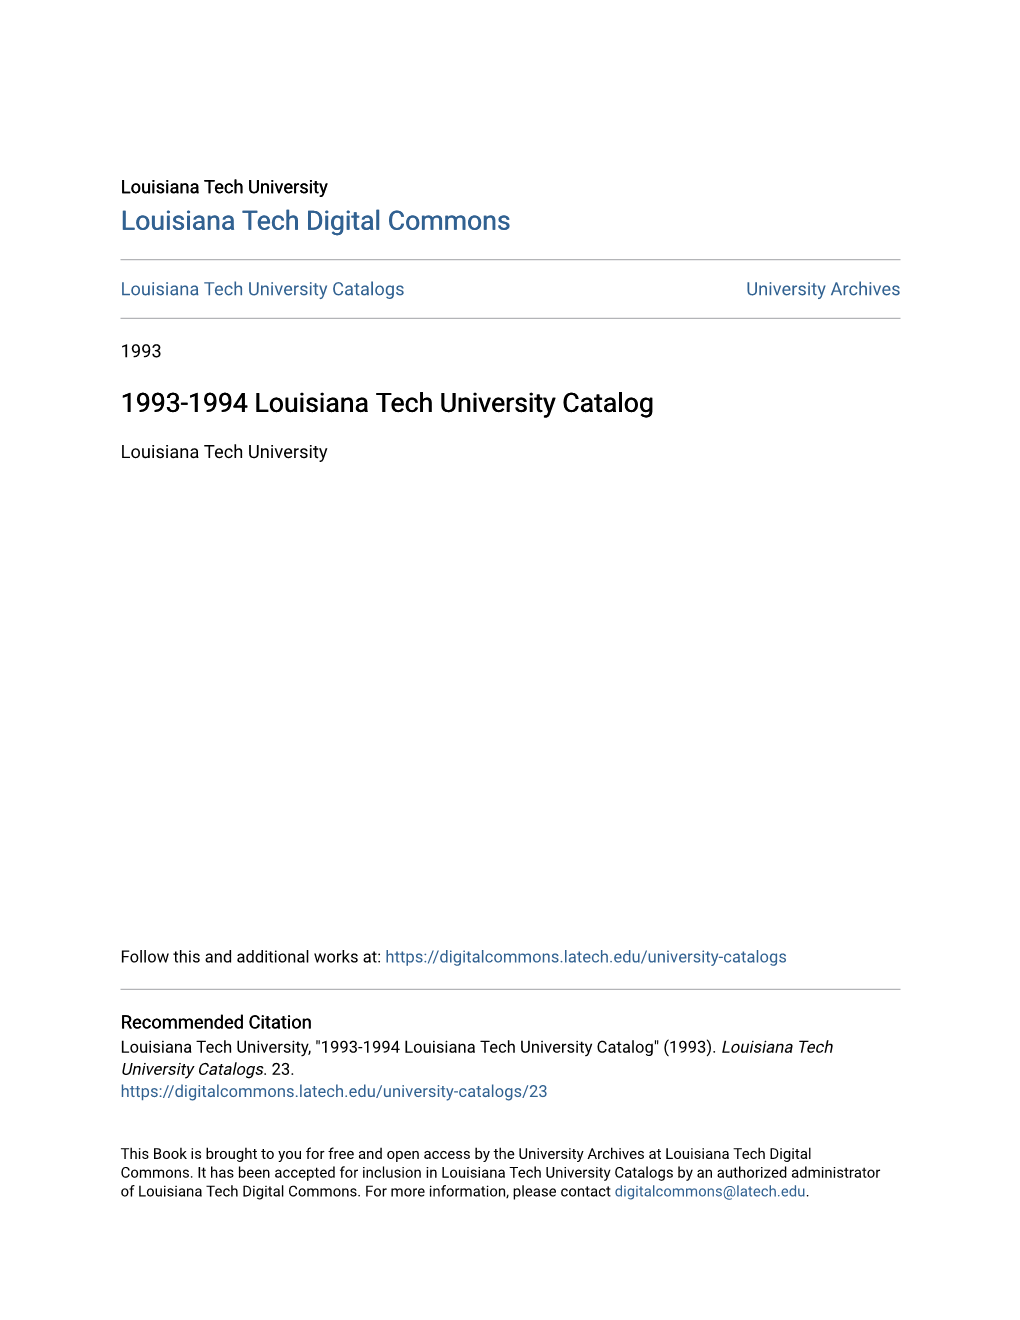 1993-1994 Louisiana Tech University Catalog